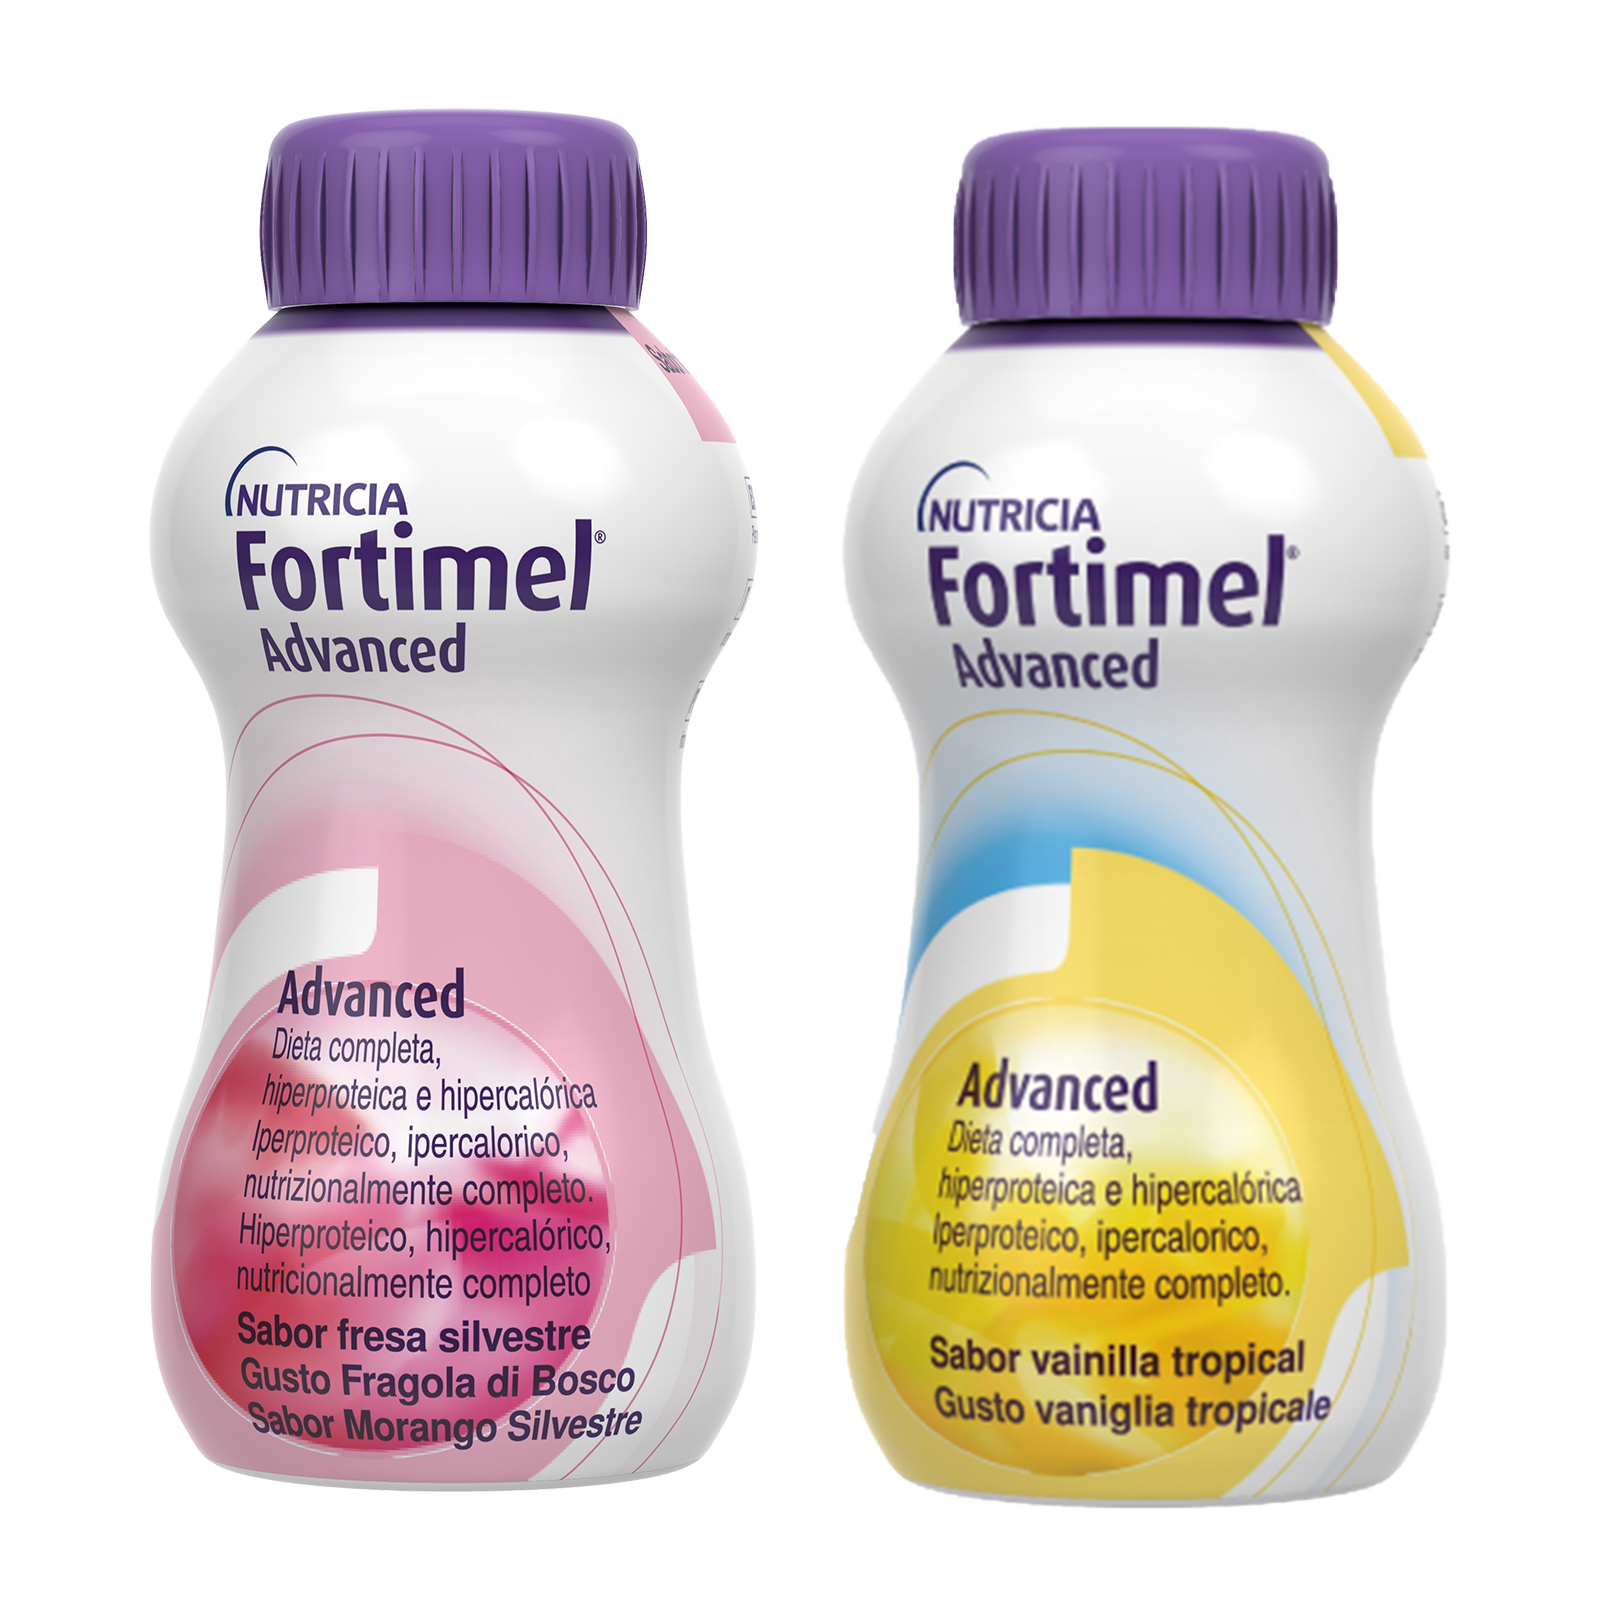 Fortimel Advanced Fragola e Vaniglia tropicale 8 bottigliette | Fortimel Nutricia